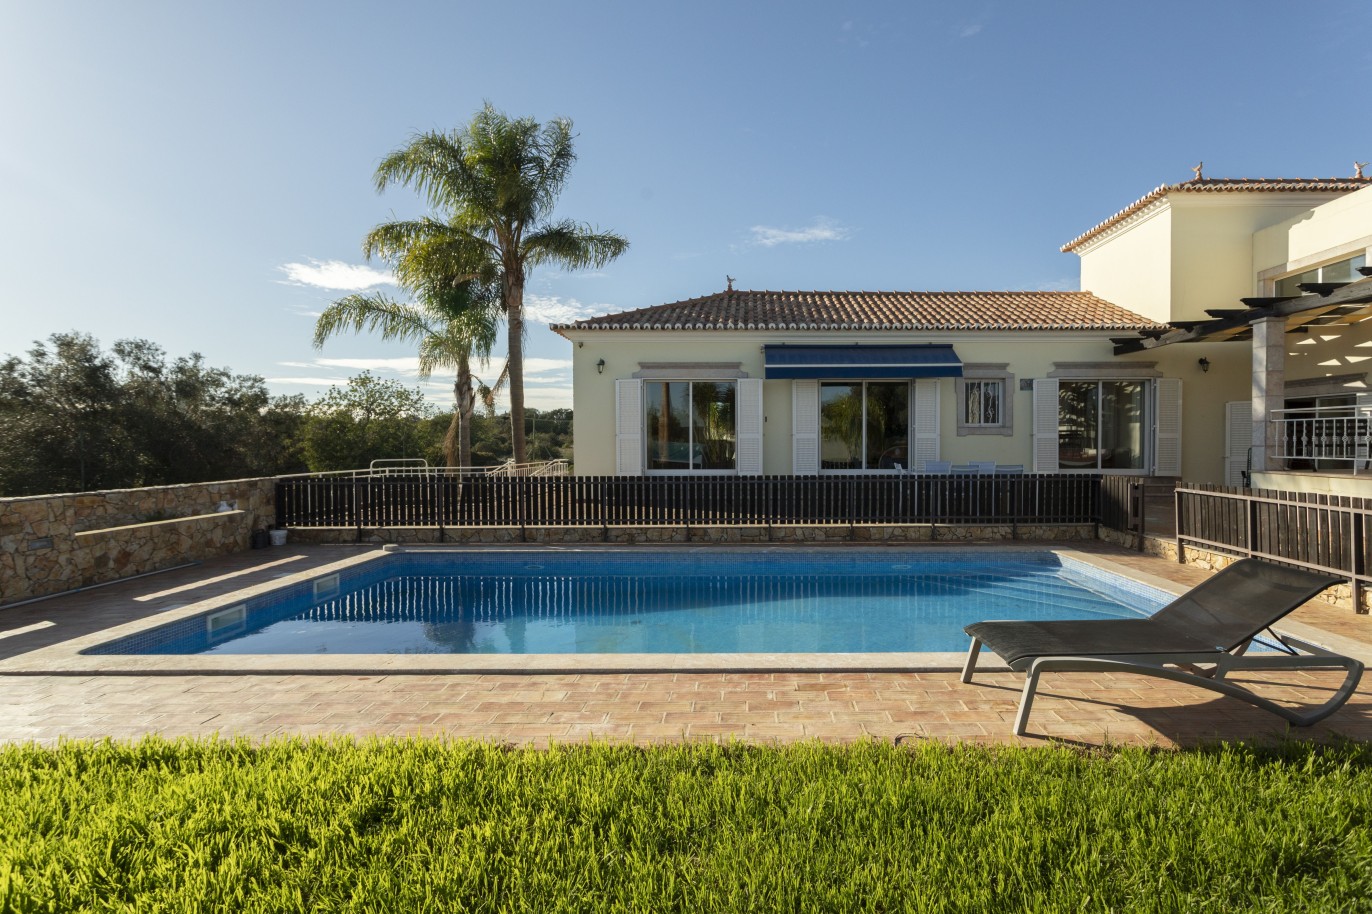 Moradia V4 com piscina, para venda em São Brás de Alportel, Algarve_245031